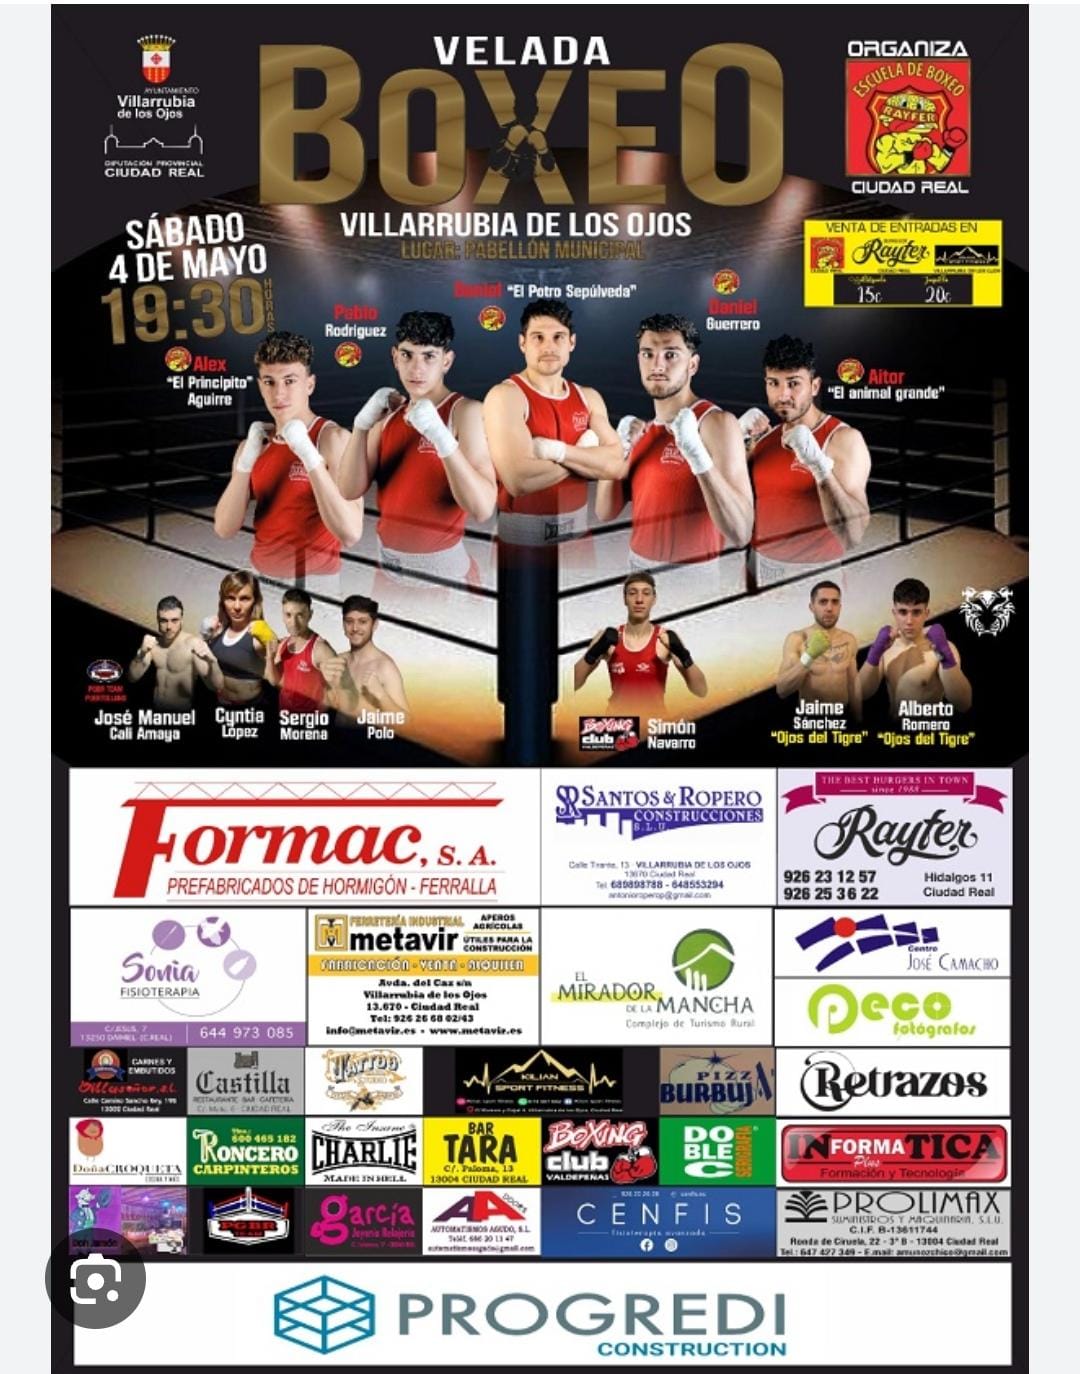 Los mejores boxeadores de la provincia de Ciudad Real se enfrentarán este próximo sábado, 4 de mayo, en la primera Velada de Boxeo en Villarrubia de los Ojos